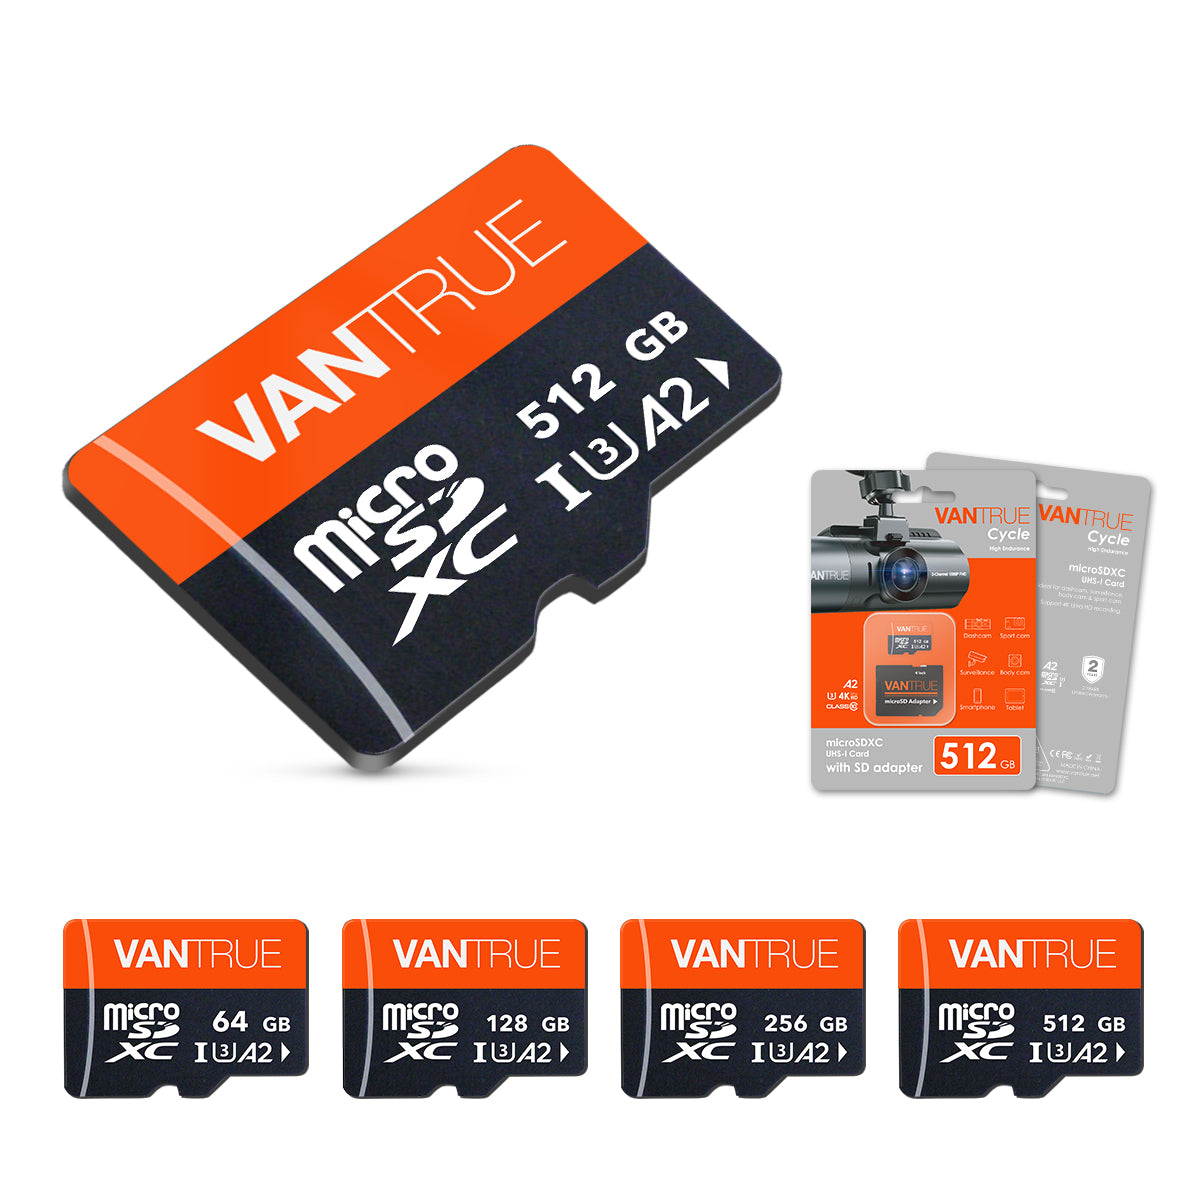 Vantrue microSDカード